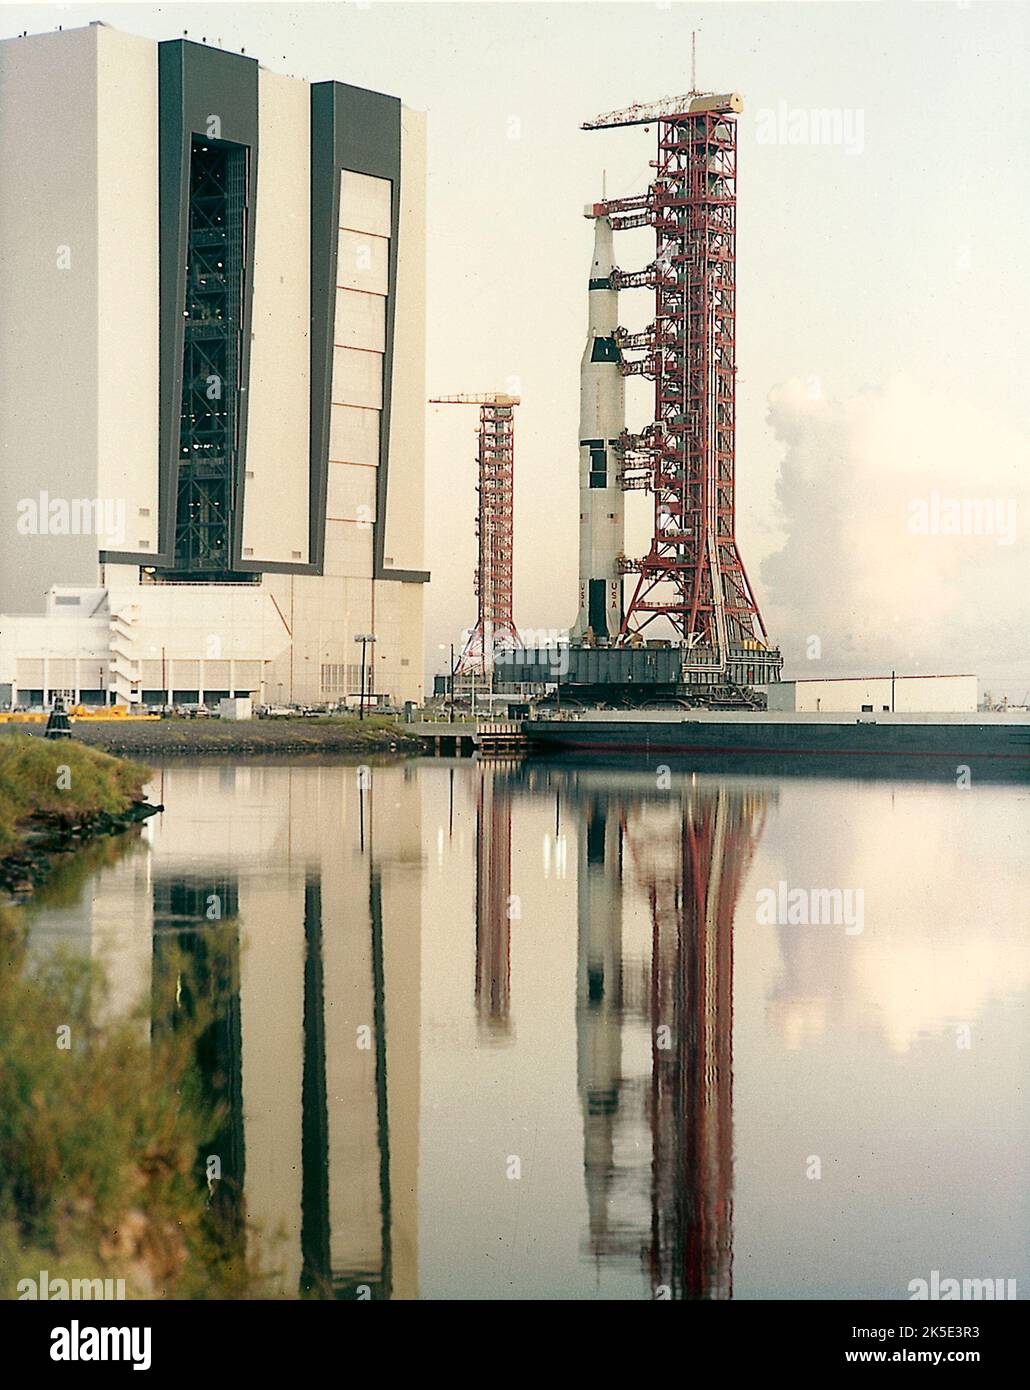 En agosto de 1967, el vehículo Saturn V (SA-501), salió a la plataforma de lanzamiento en preparación para su primer lanzamiento. El cohete de 363 pies de altura salió del edificio de la Asamblea de Vehículos y se dirigió a la plataforma de lanzamiento en el Centro Espacial Kennedy, Florida. La misión Apollo 4 fue un vuelo de prueba sin tripulación diseñado para obtener información de vuelo sobre la integridad estructural y la compatibilidad de vehículos de lanzamiento y naves espaciales, cargas de vuelo, separación de etapas y funcionamiento de subsistemas, y para evaluar el escudo térmico del módulo de comando Apollo. El lanzamiento tuvo lugar el 9 de noviembre de 1967. Imagen optimizada de la NASA: Crédito: NASA Foto de stock